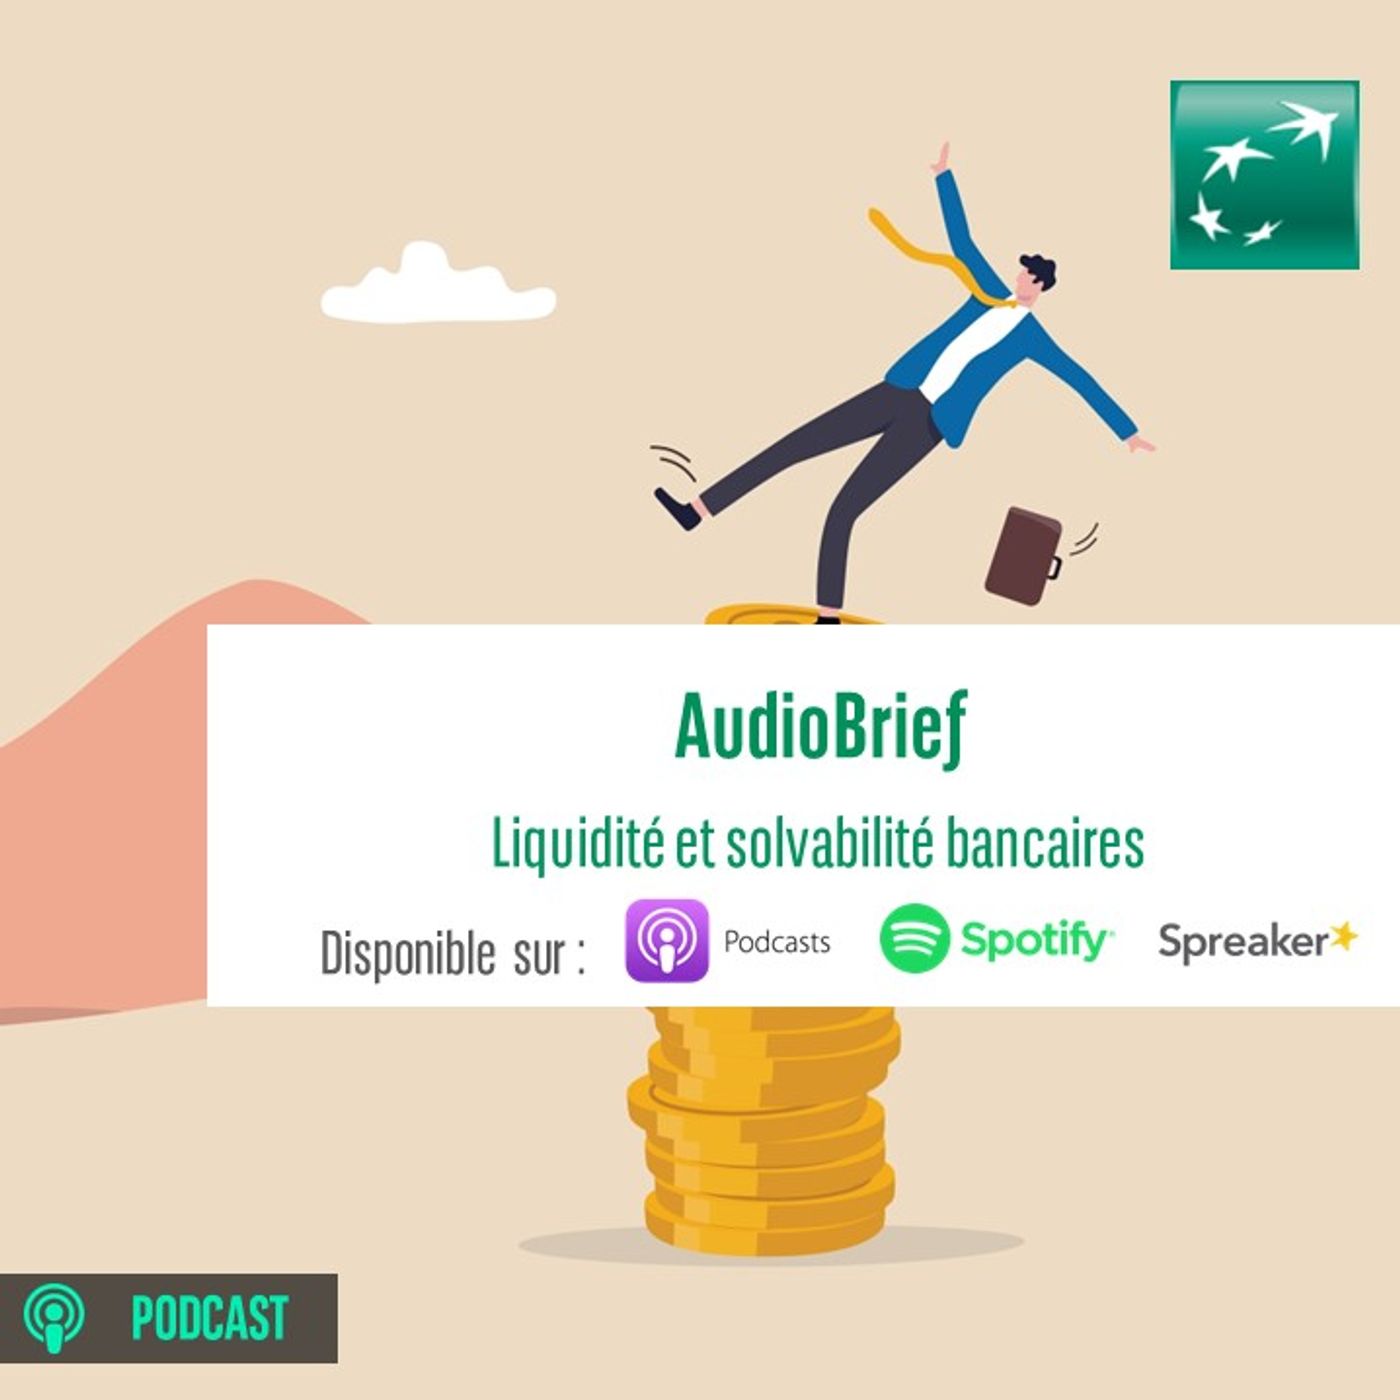 AudioBrief | Liquidité et solvabilité bancaires